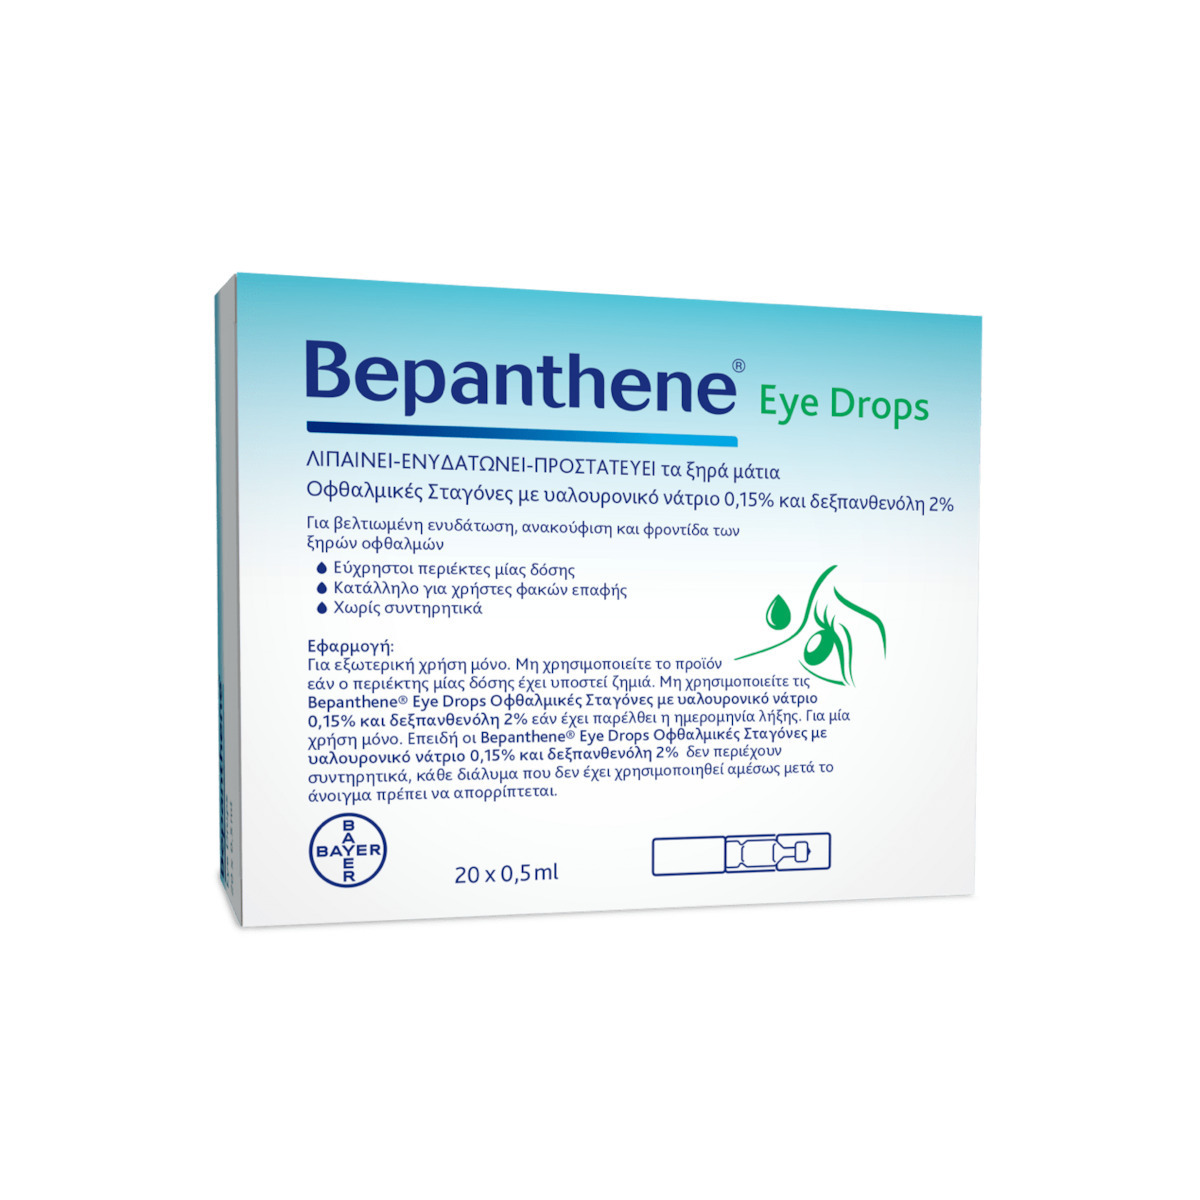 Bepanthene Eye Drops 20pcs x 0,5ml